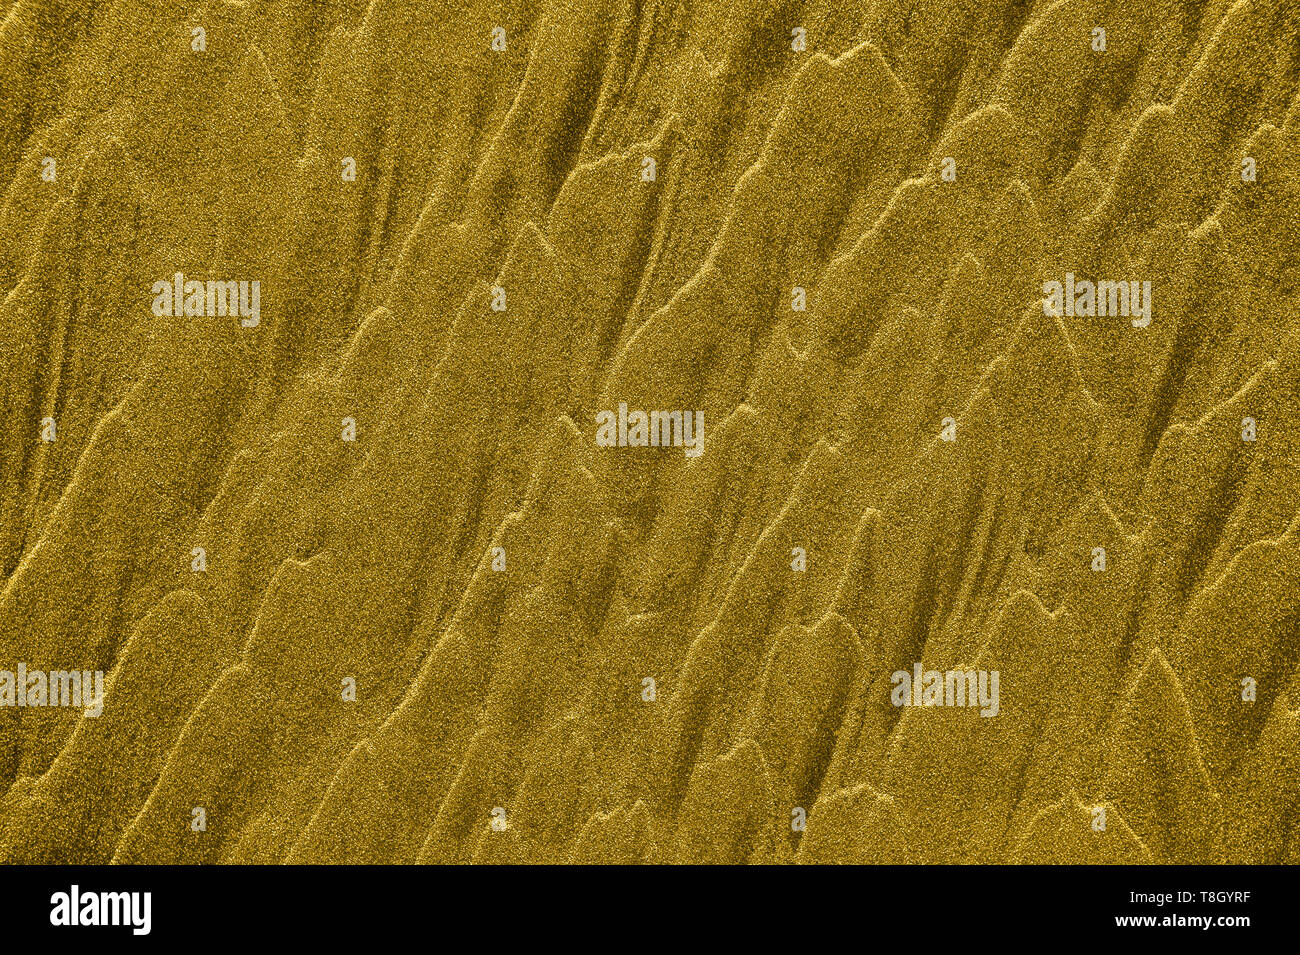 Vagues de sable doré abstract background texture avec copyspace. Banque D'Images